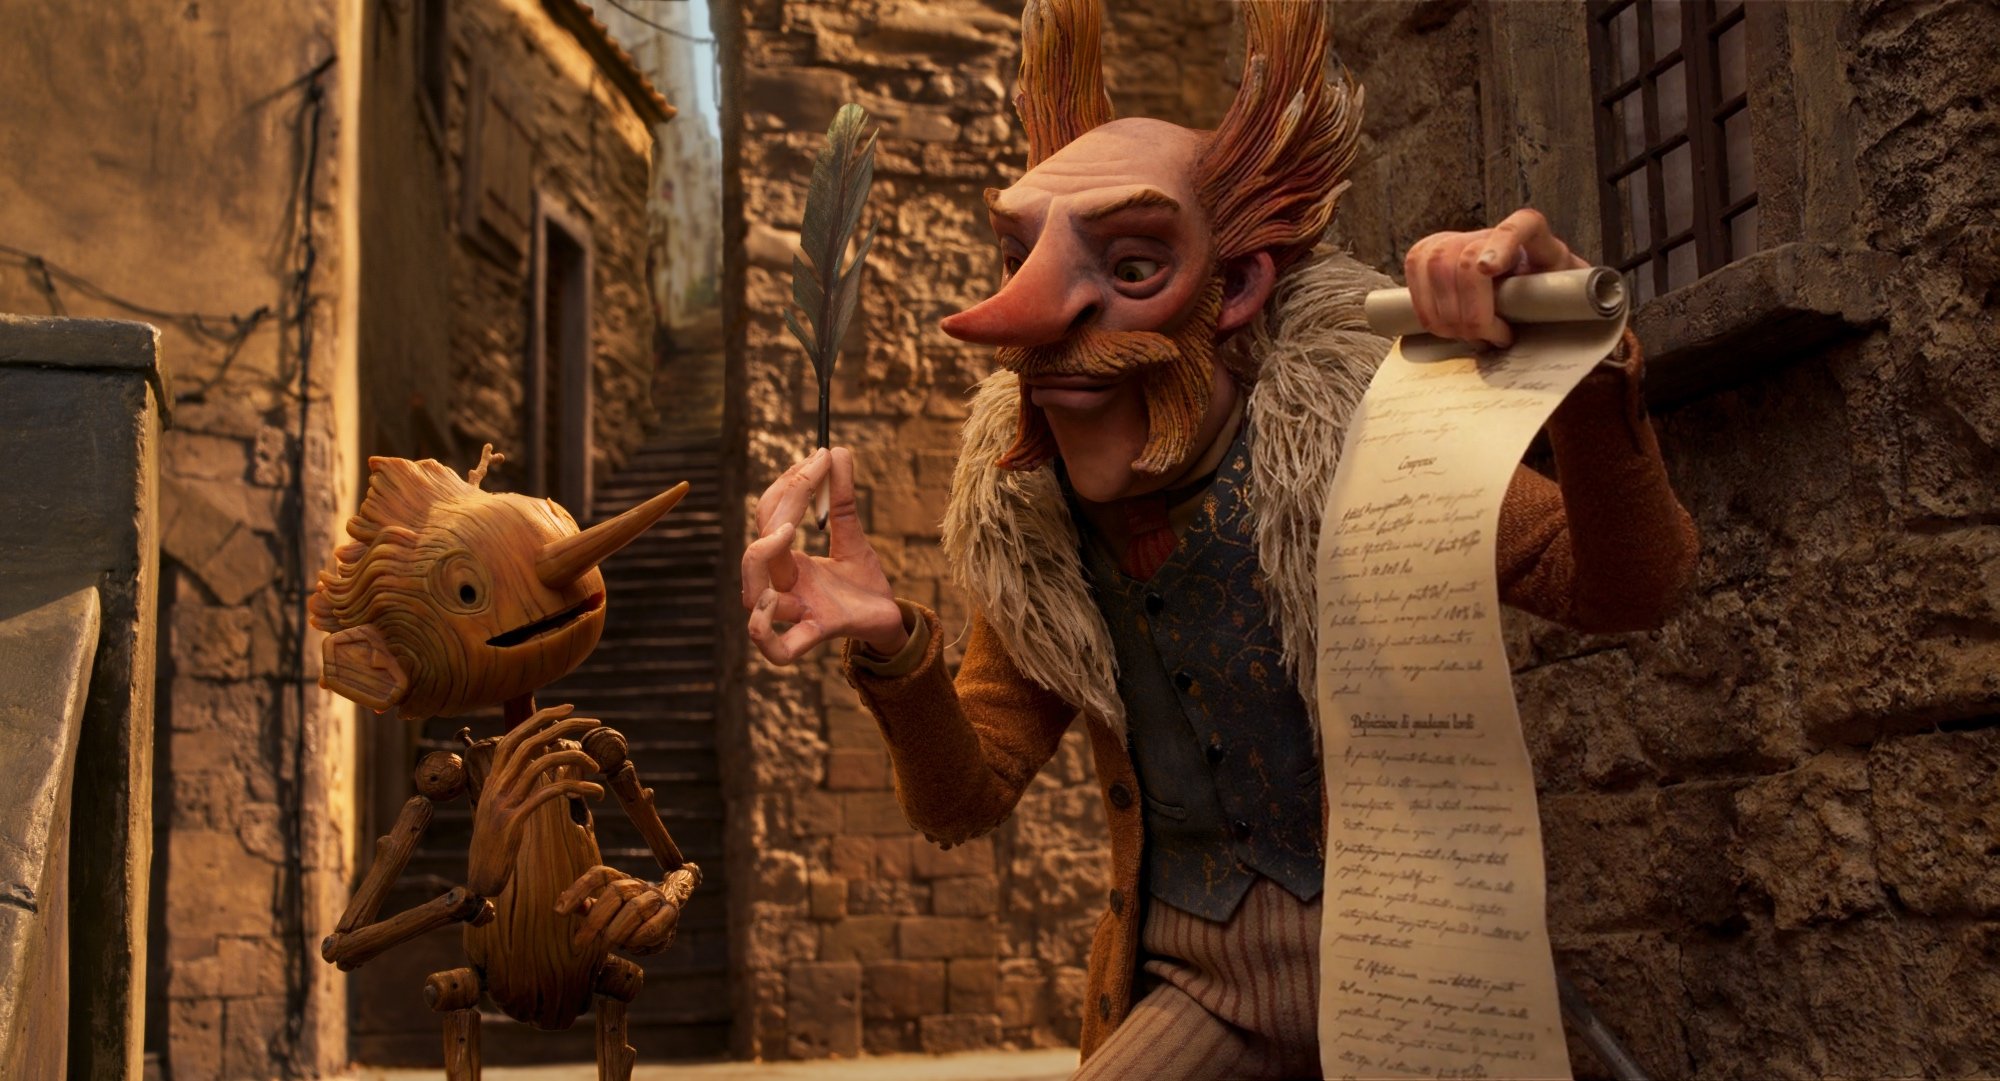 'Guillermo del Toros Pinocchio' Pinocchio (gesprochen von Gregory Mann) und Graf Volpe (gesprochen von Christoph Waltz). Volpe hält einen Vertrag und eine Feder in Richtung Pinocchio.